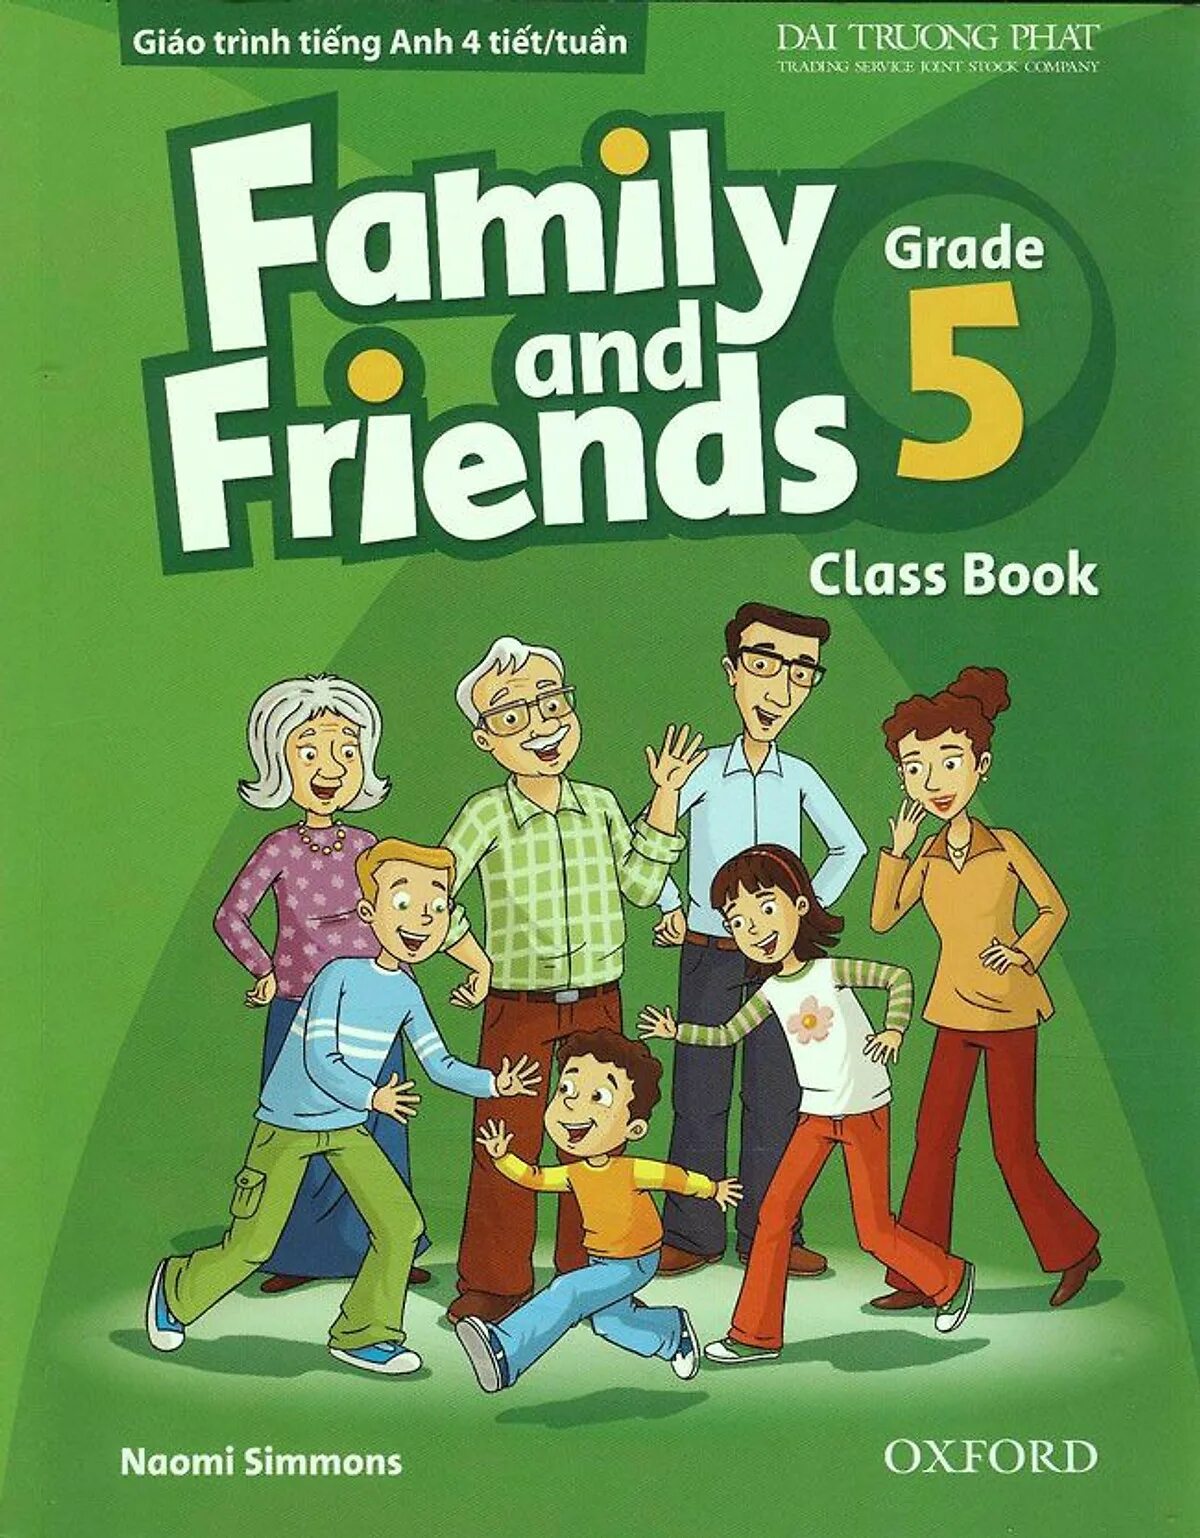 Фэмили френд. Учебник Family and friends 5. Family English учебник. Фэмили френдс 5. Английский Family and friends.